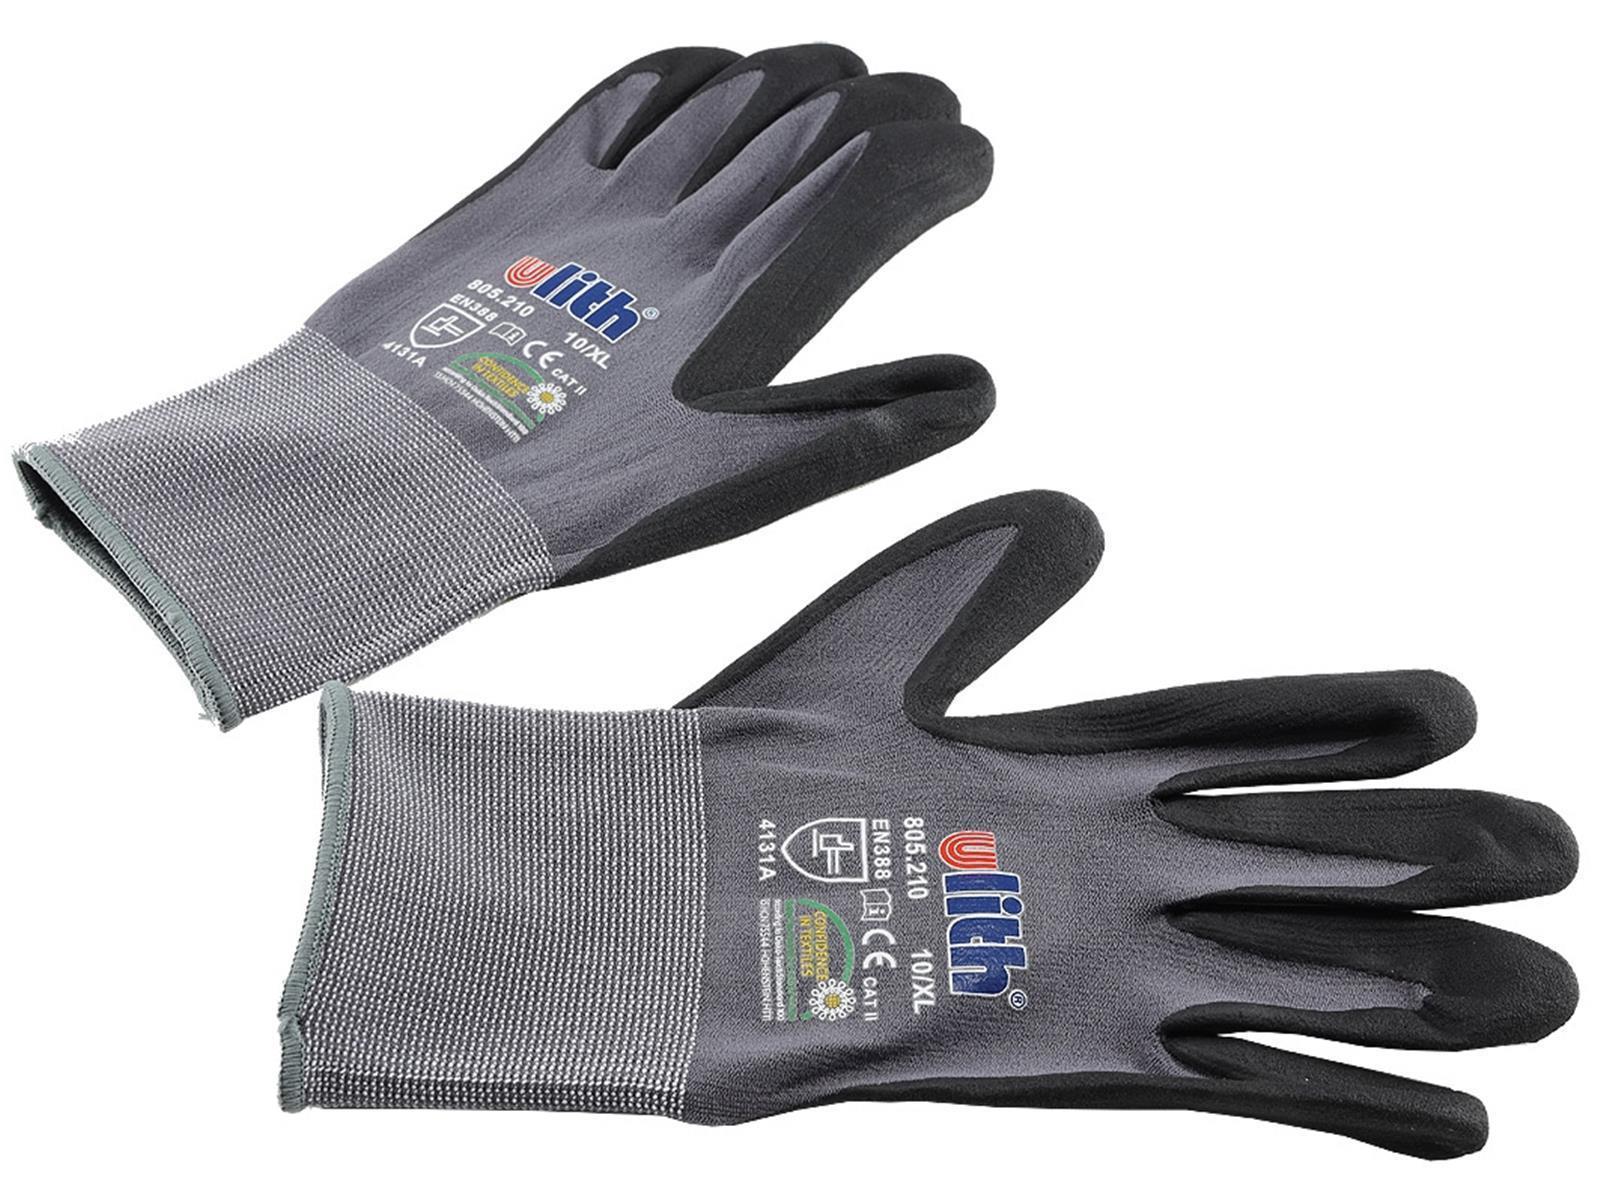 Profi Arbeits-Handschuhe mit Kautschuk-Beschichtung, Ökotex 100, Größe 10